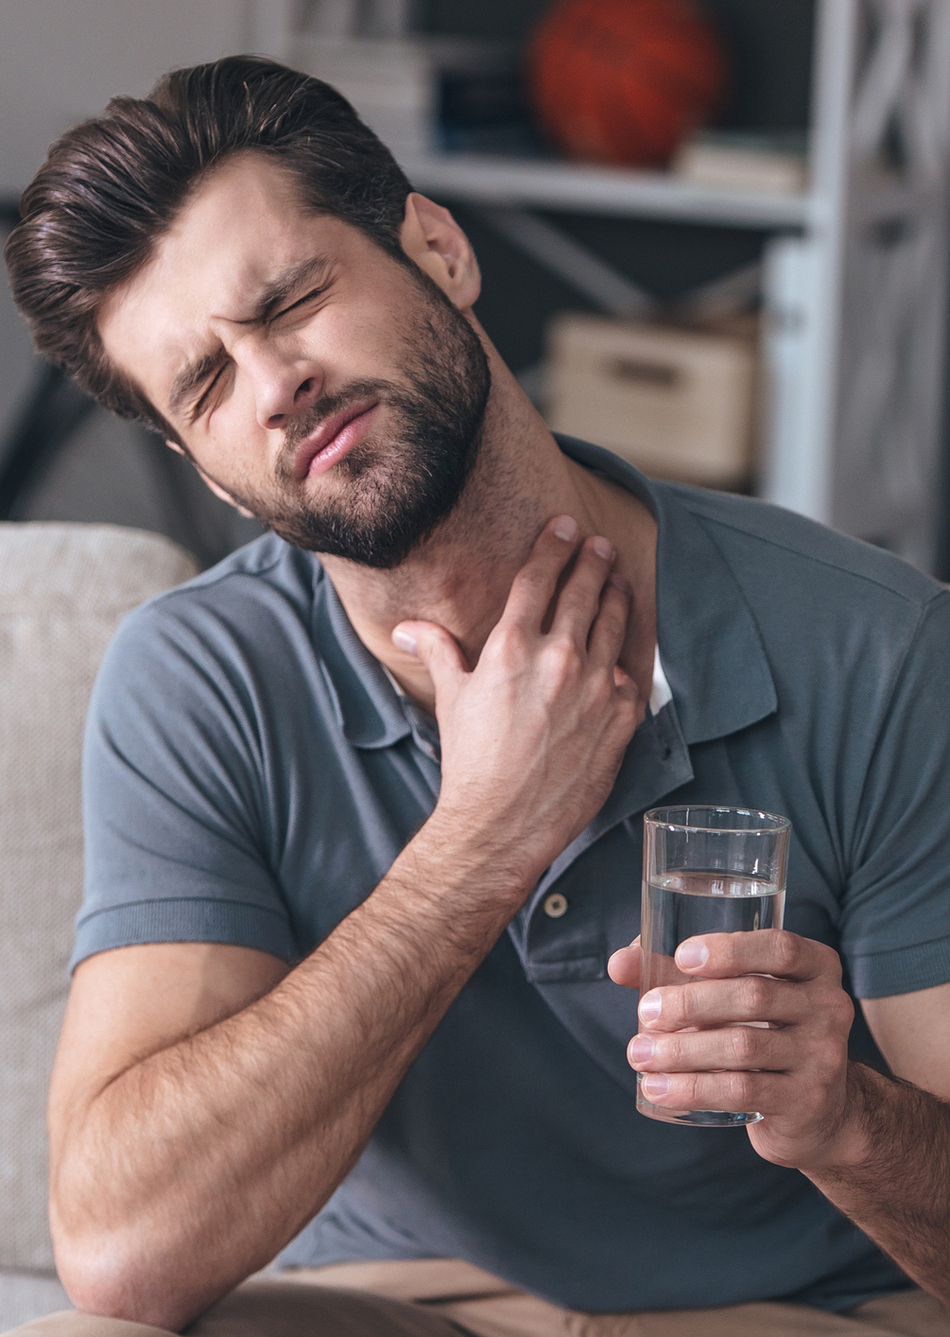 Does Gargling Salt Water Help a Sore Throat?